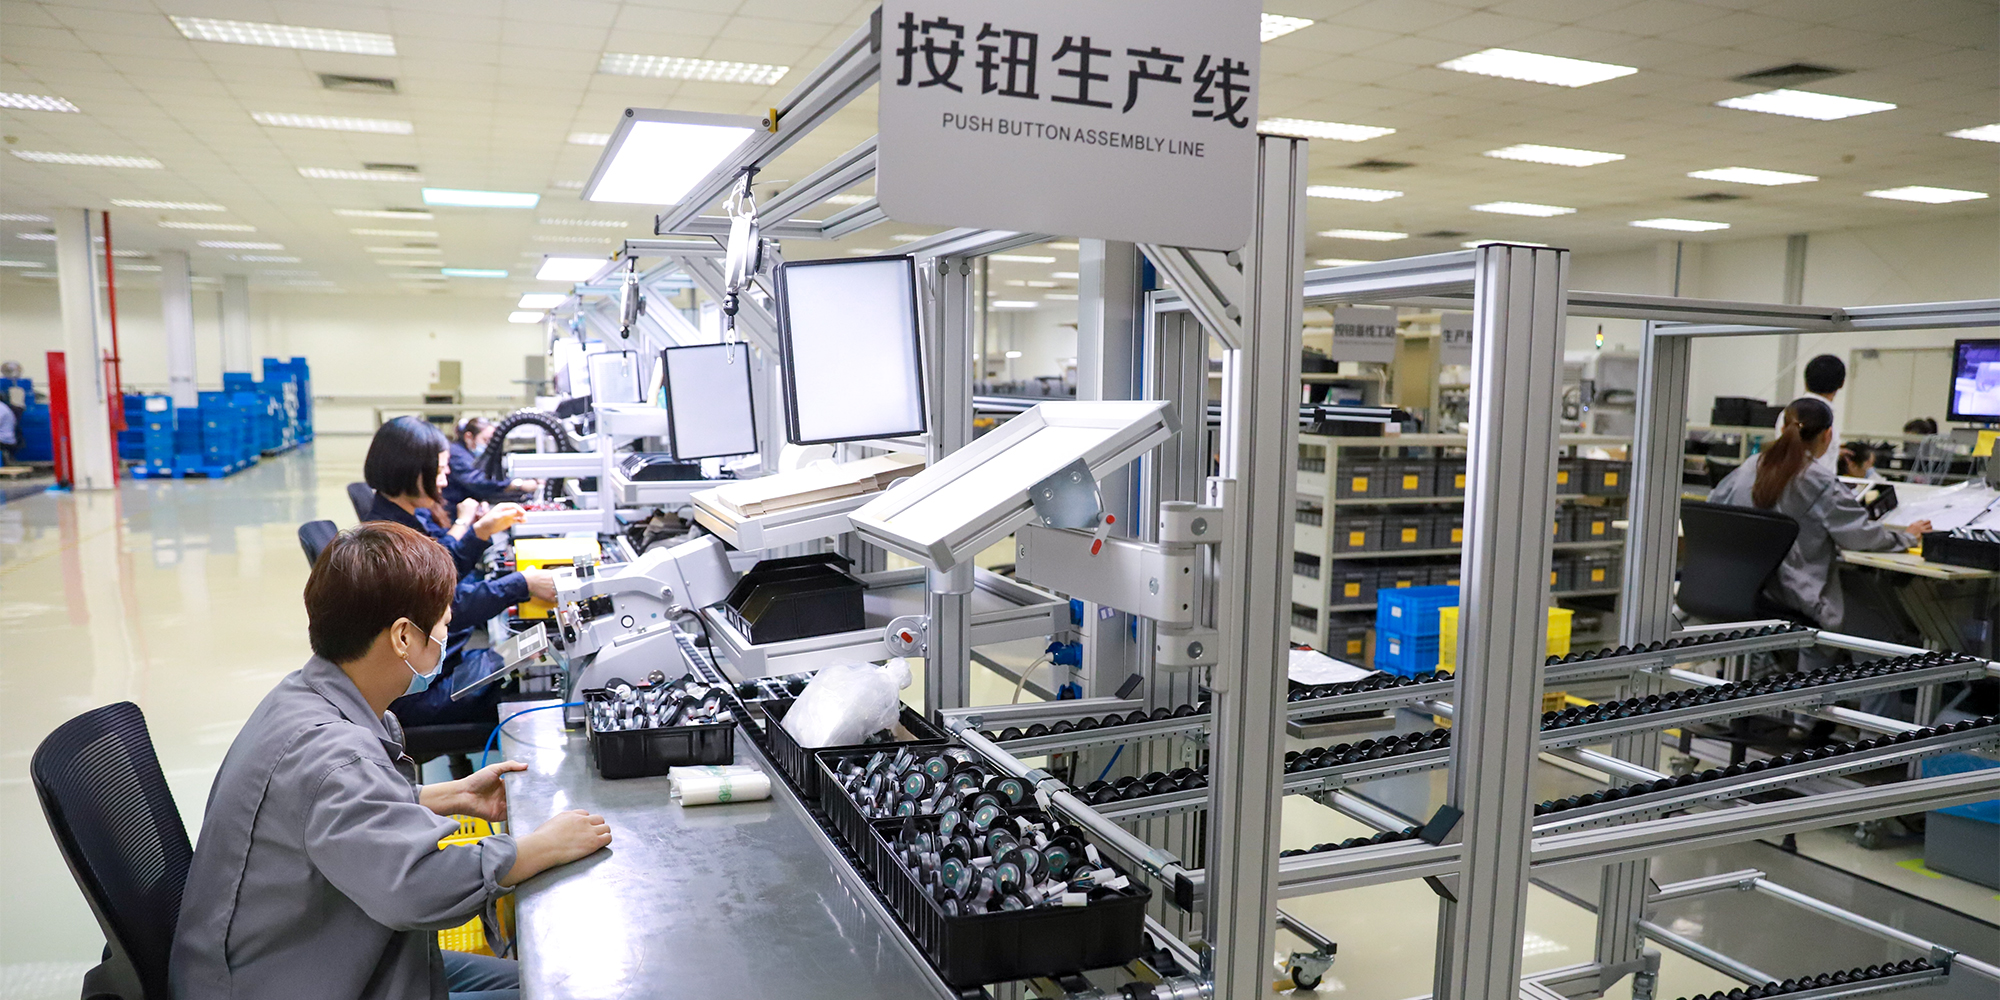 lebensmittel modifizierte stärke china Handeln, Kaufen china direkt von den  lebensmittel modifizierte stärke Fabriken bei Alibaba.com